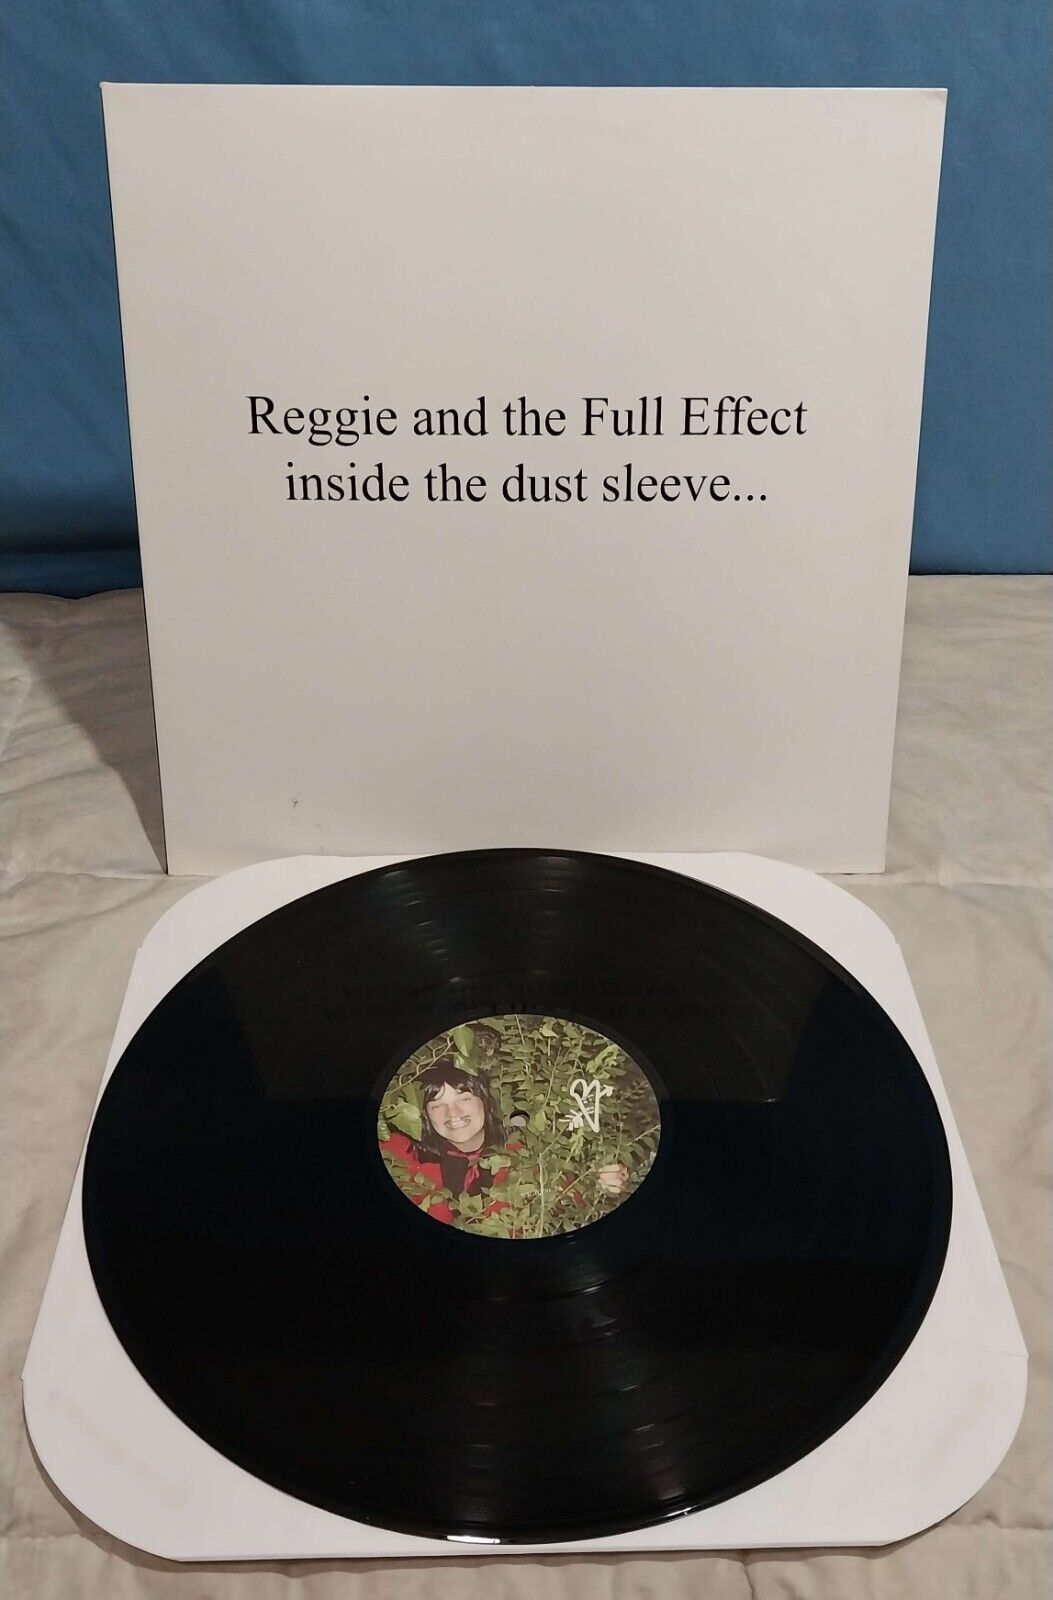 Reggie and the Full Effect inside the dust sleeve, Gatefold Vinyl LP 2002 VG+.